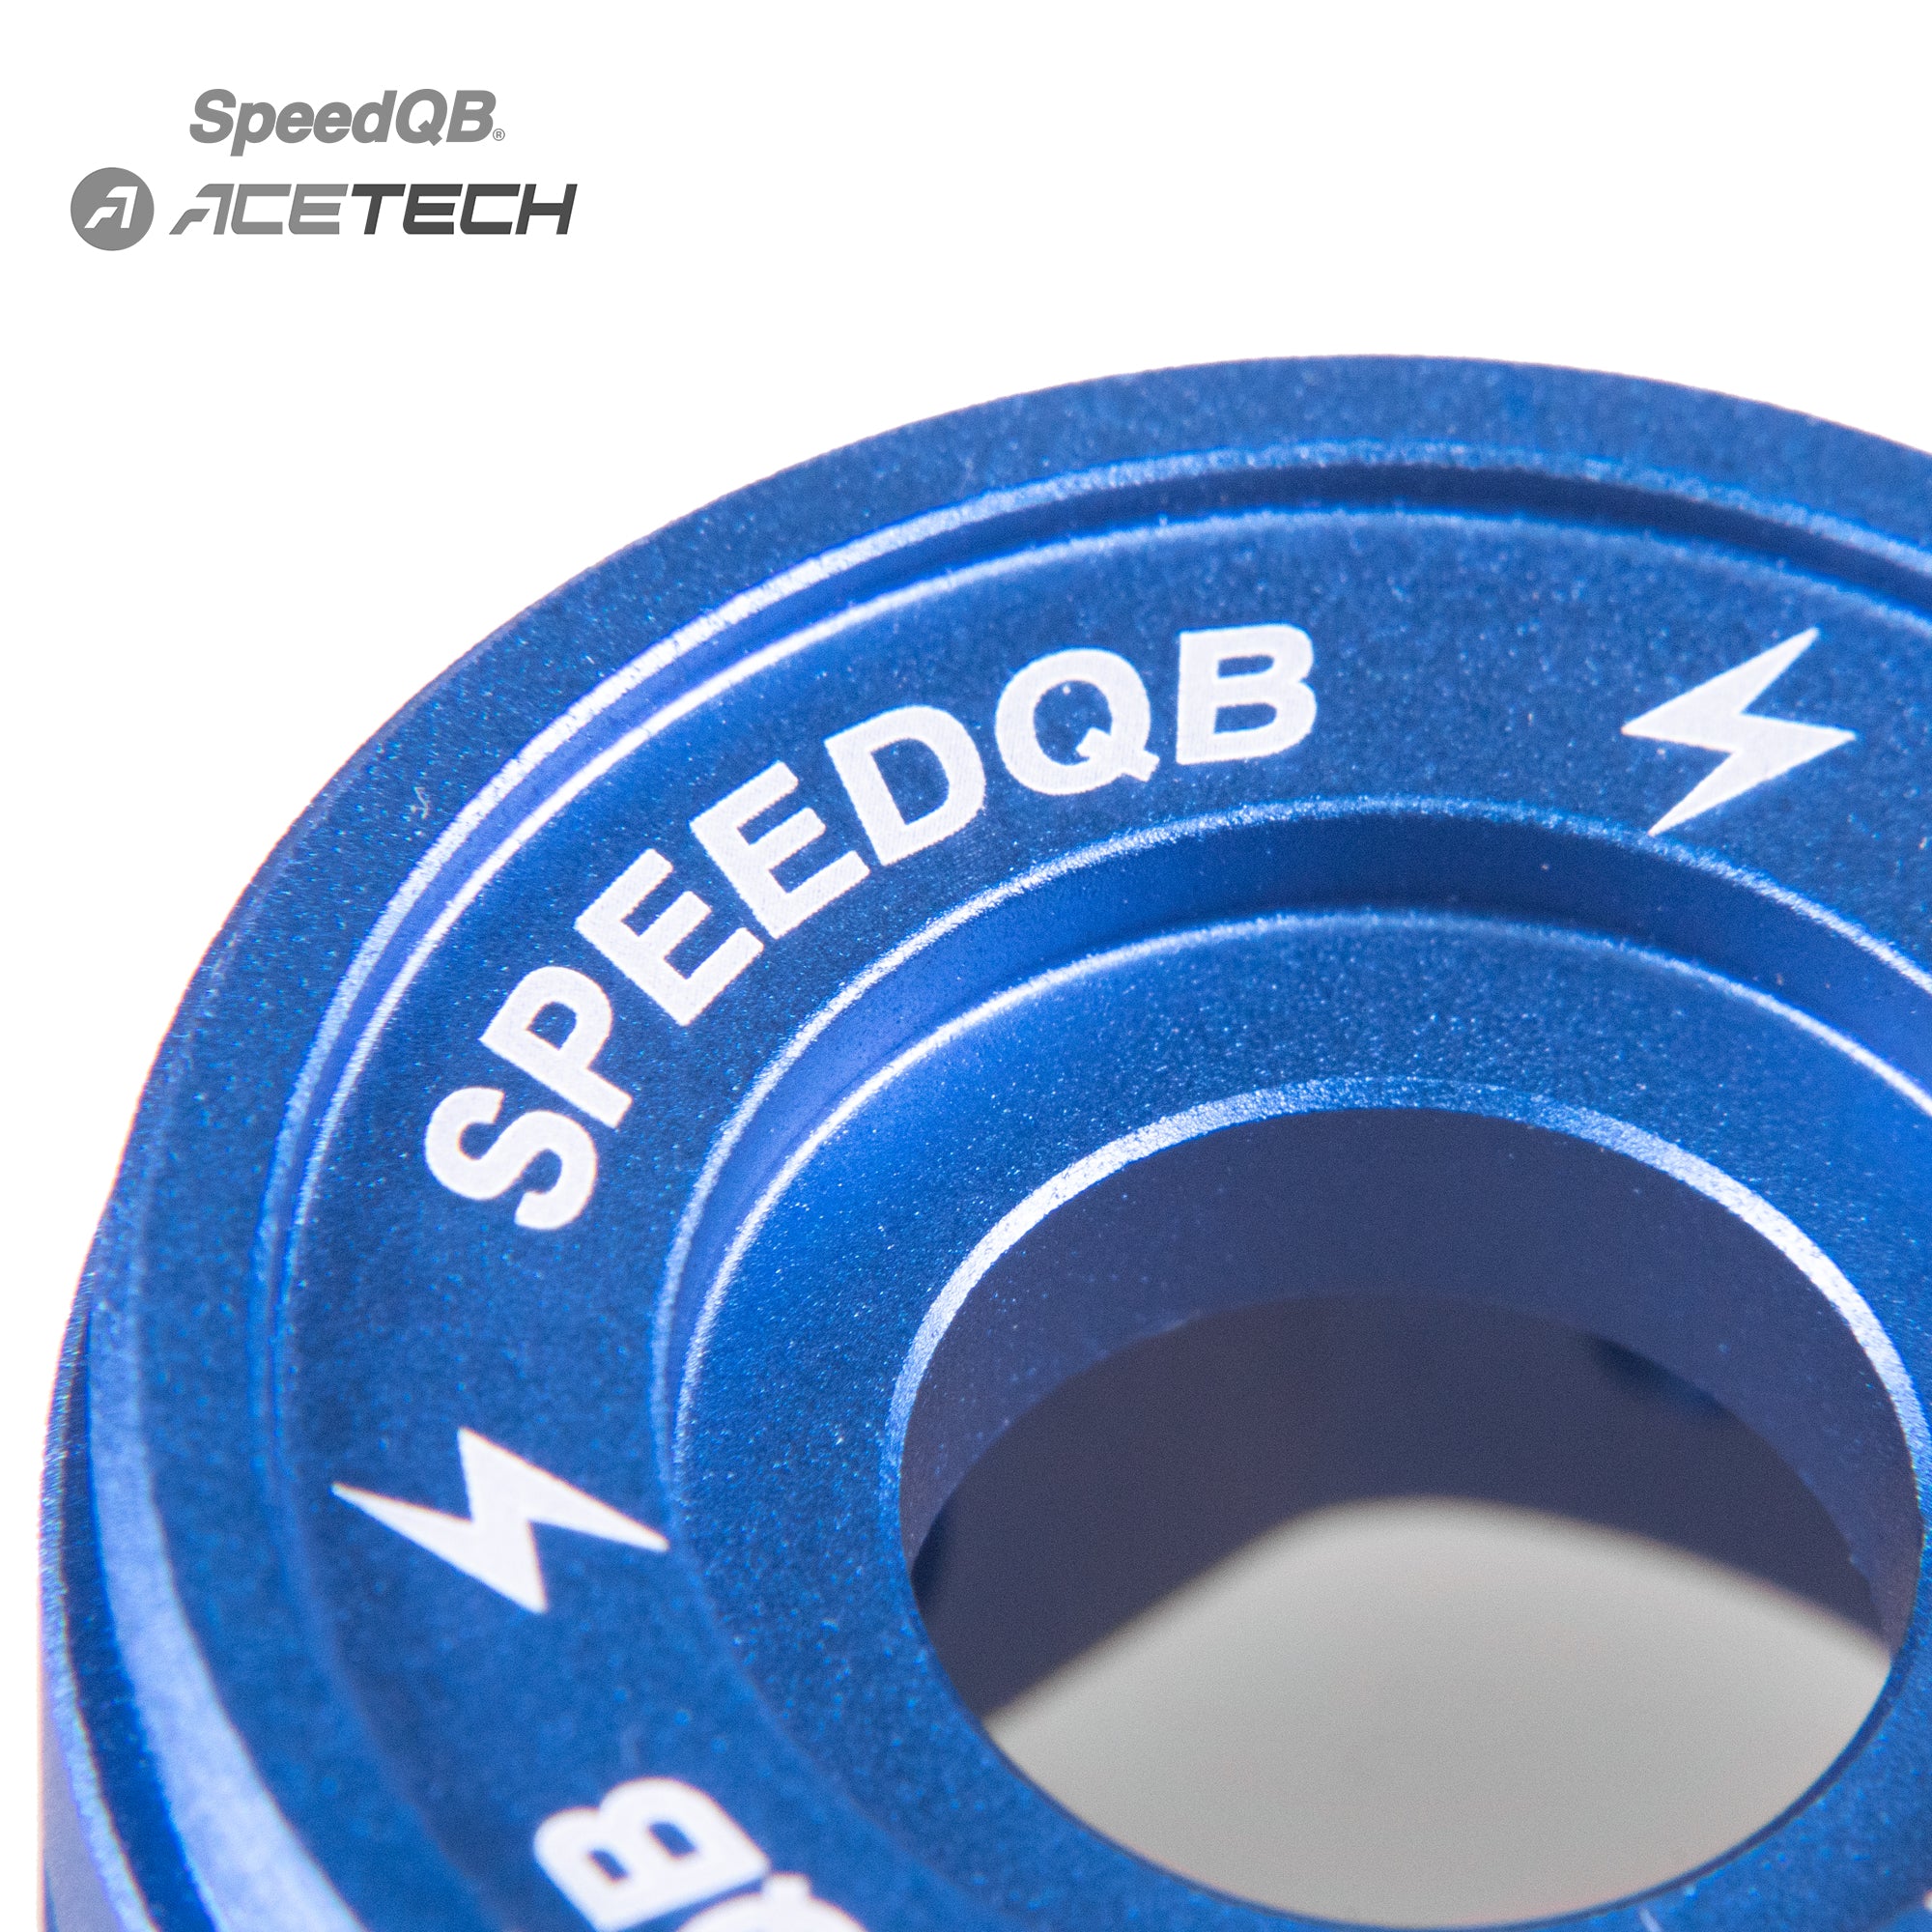 SPEEDQB X ACETECH MK.1 ANODIZED CAP – BLUE